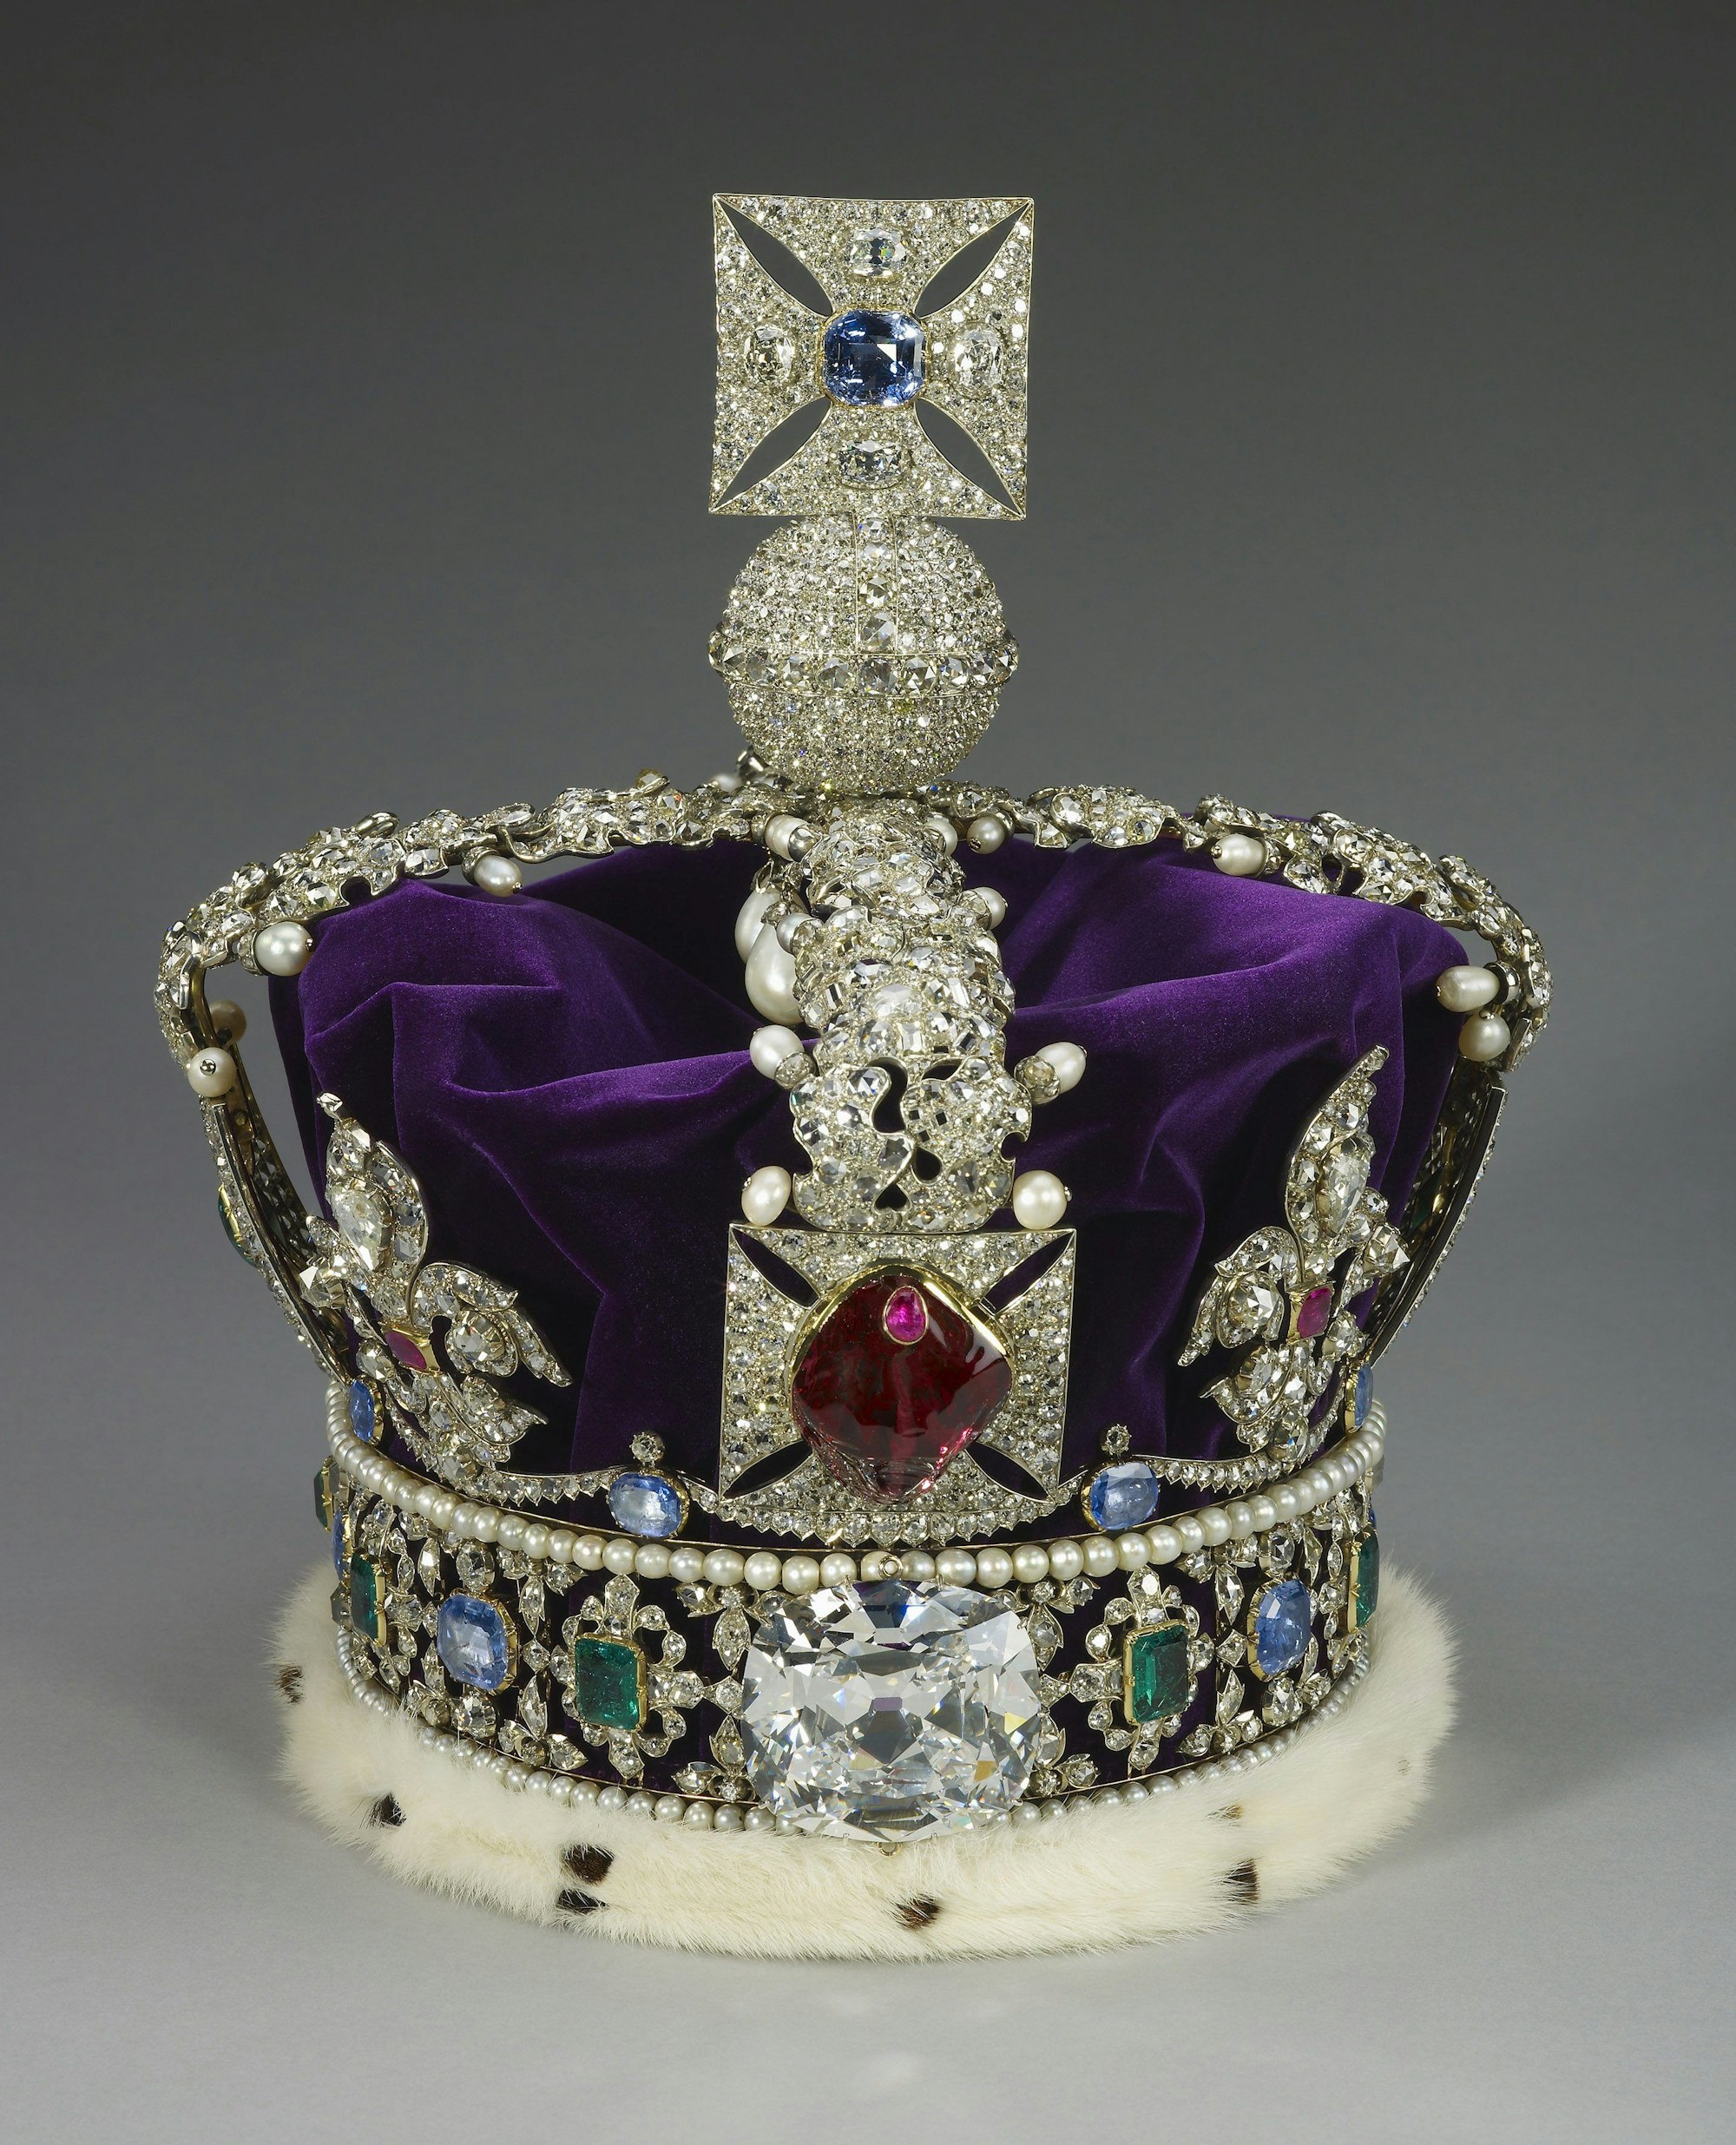 Vorbild für das neue Emoji: Die Imperial State Crown, die bei der Krönung von König Charles III. in der Westminster Abbey in London am 6. Mai zu sehen sein wird.